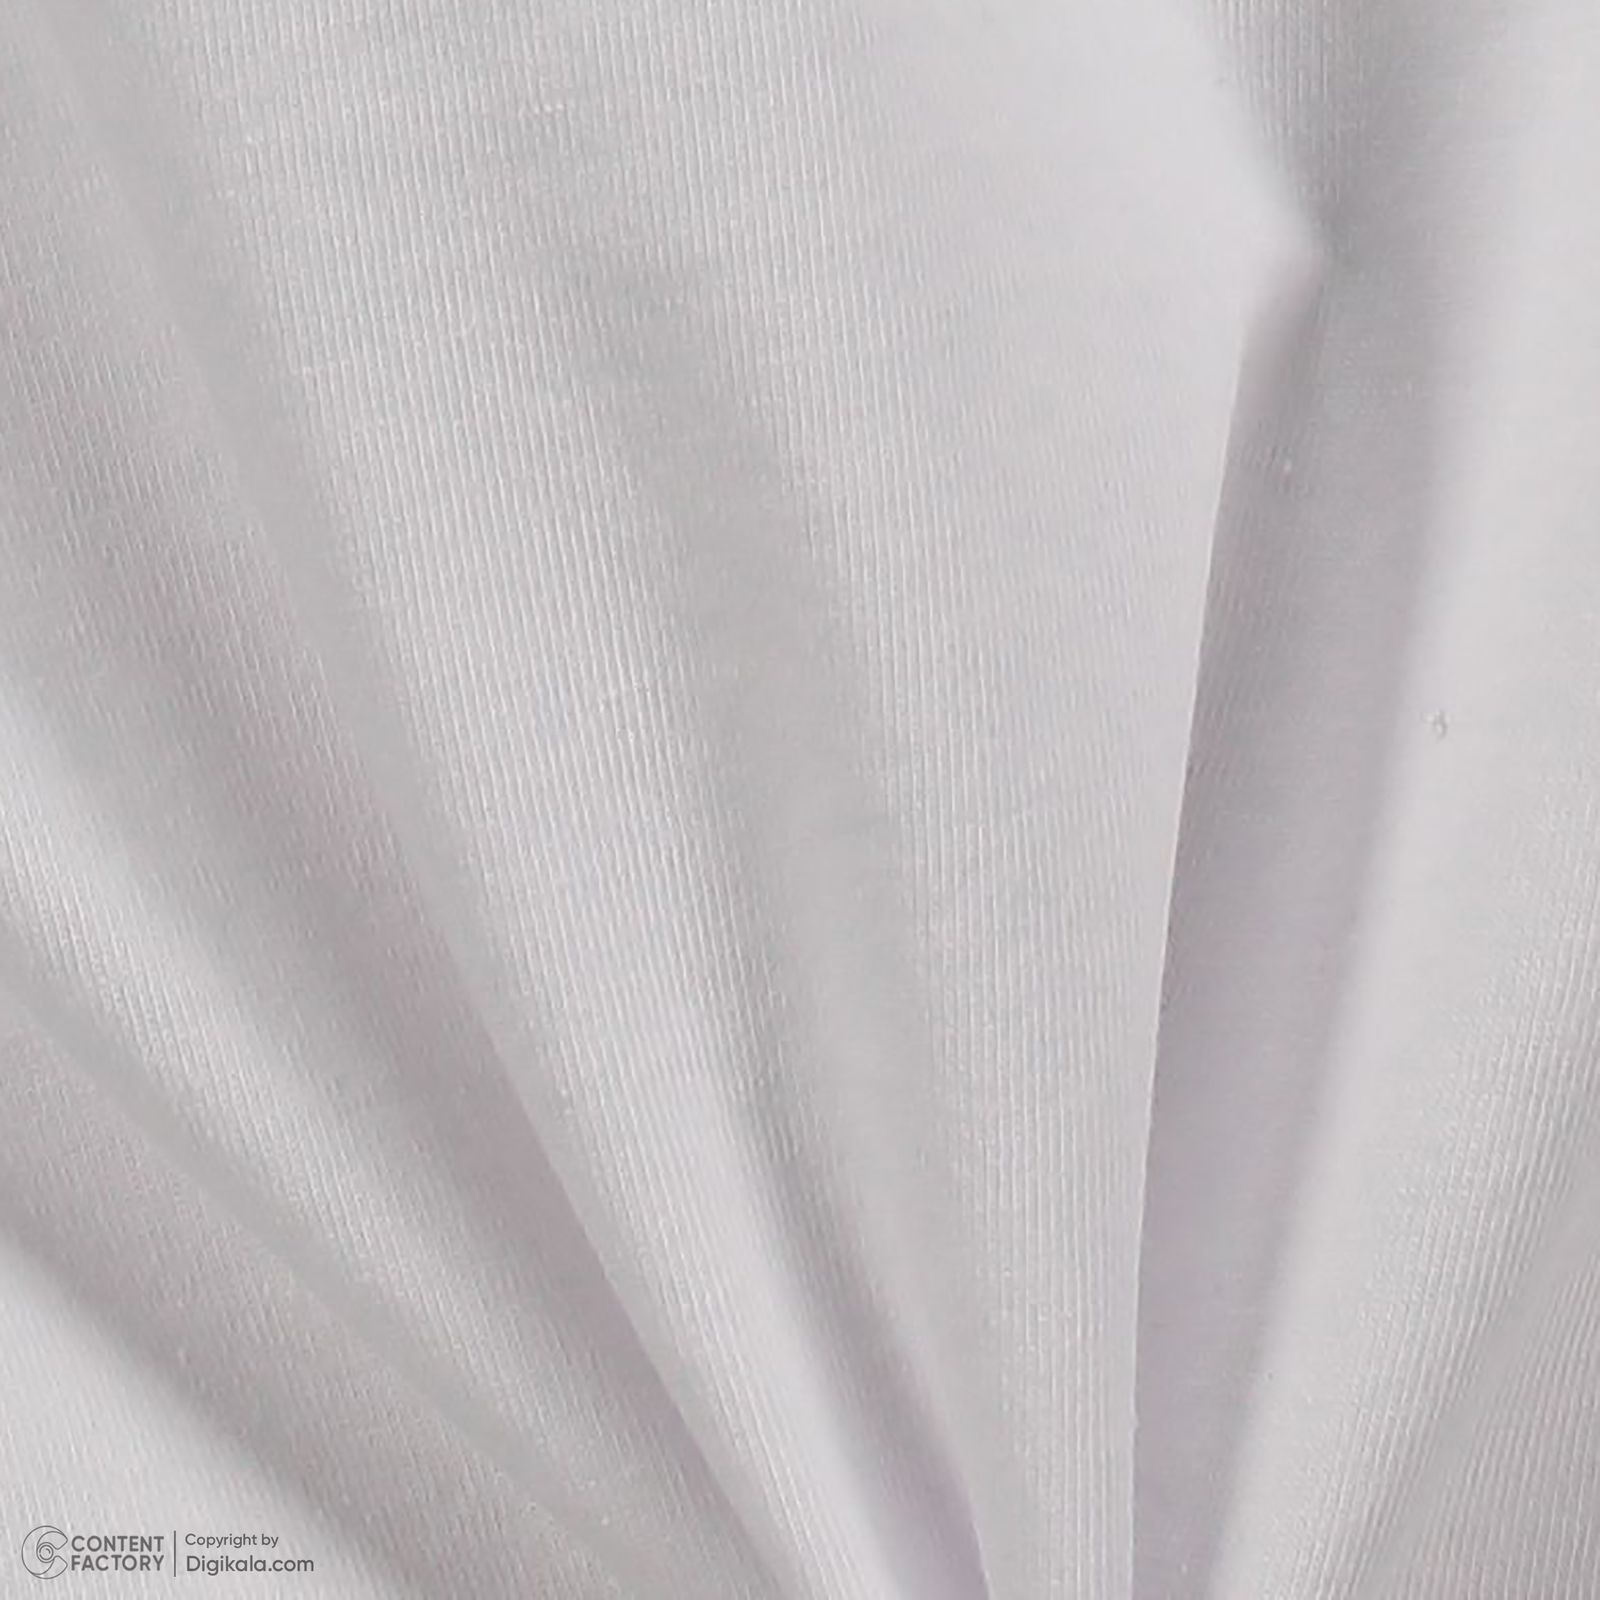 ست تی شرت آستین کوتاه و شلوارک زنانه ناربن مدل 1521905 رنگ سفید -  - 2